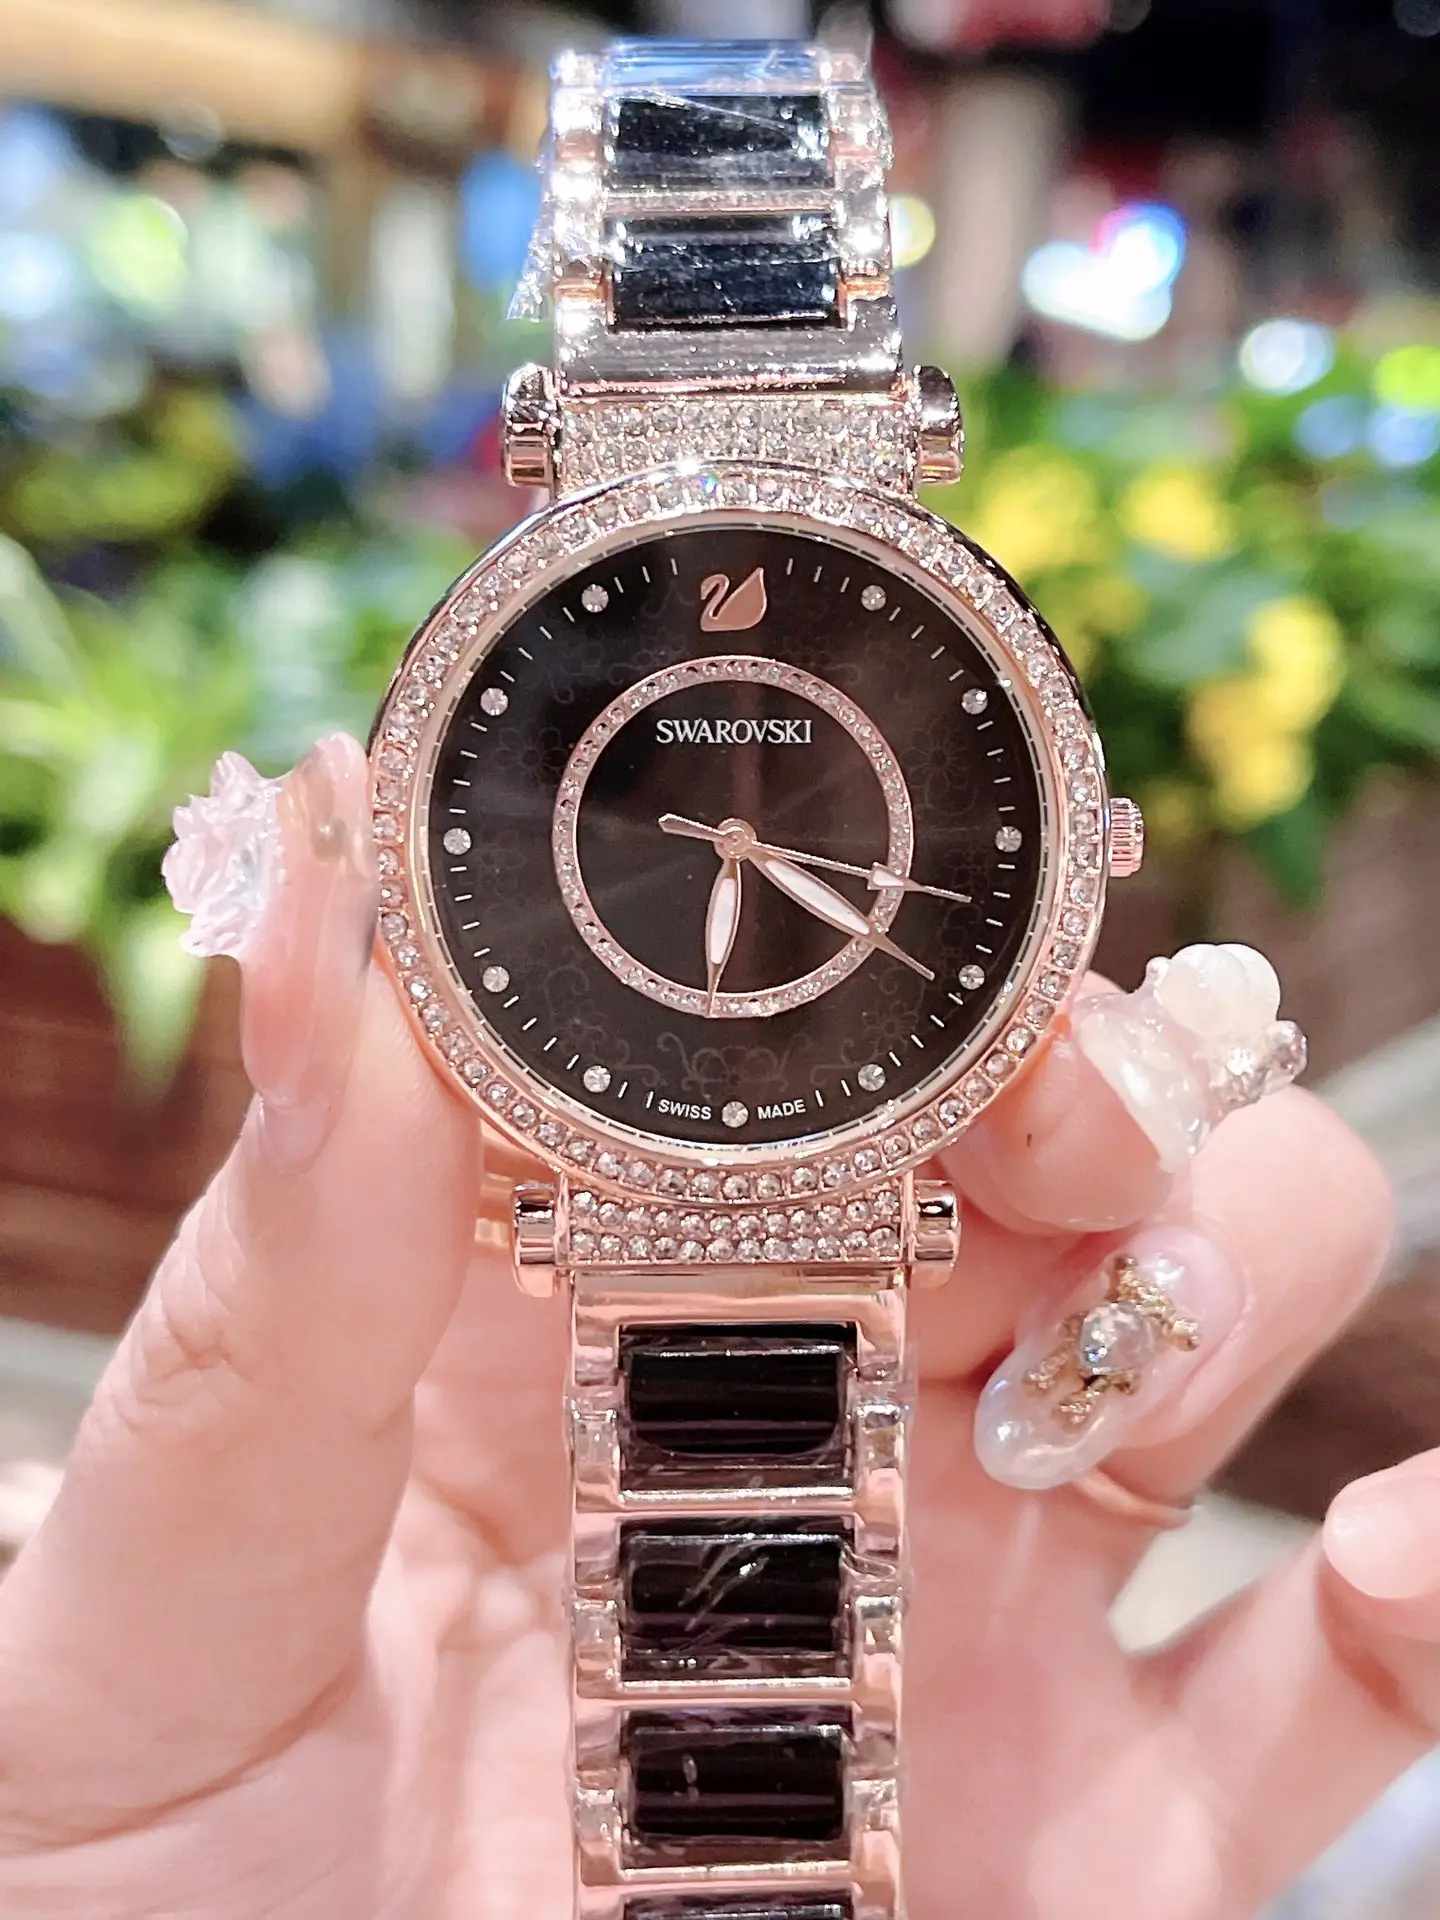 レディース腕時計😀 | ハイエンドカスタム潮牌店が投稿したフォト